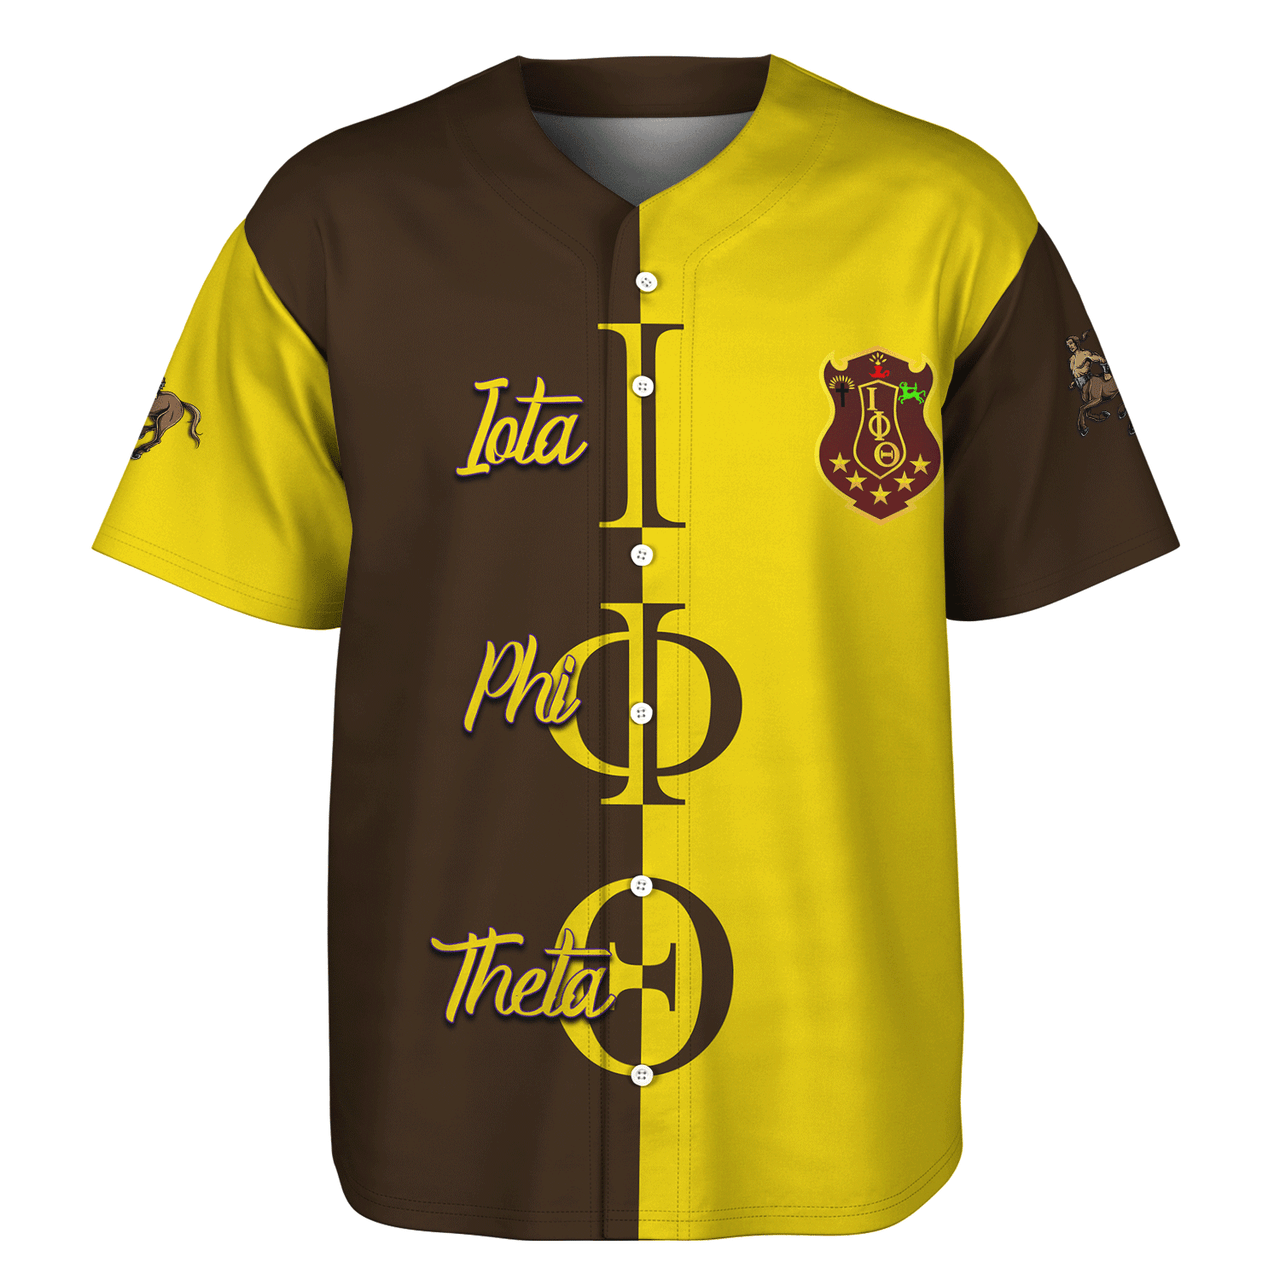 Iota Phi Theta Baseball Shirt Half Style